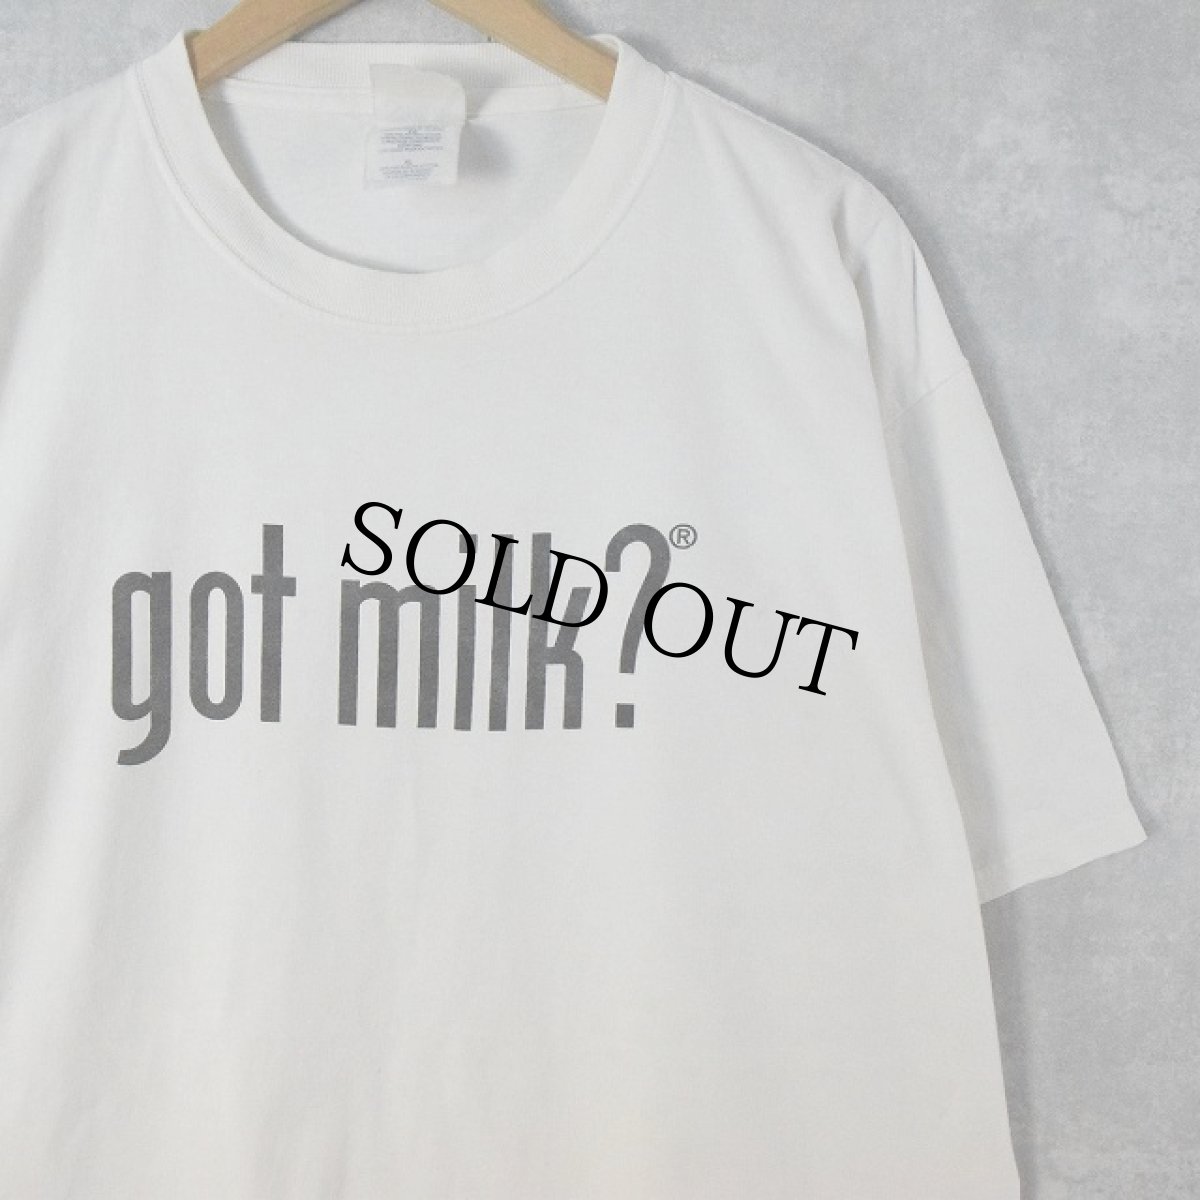 画像1: 2000's "got milk?" キャンペーン ロゴプリントTシャツ XL (1)